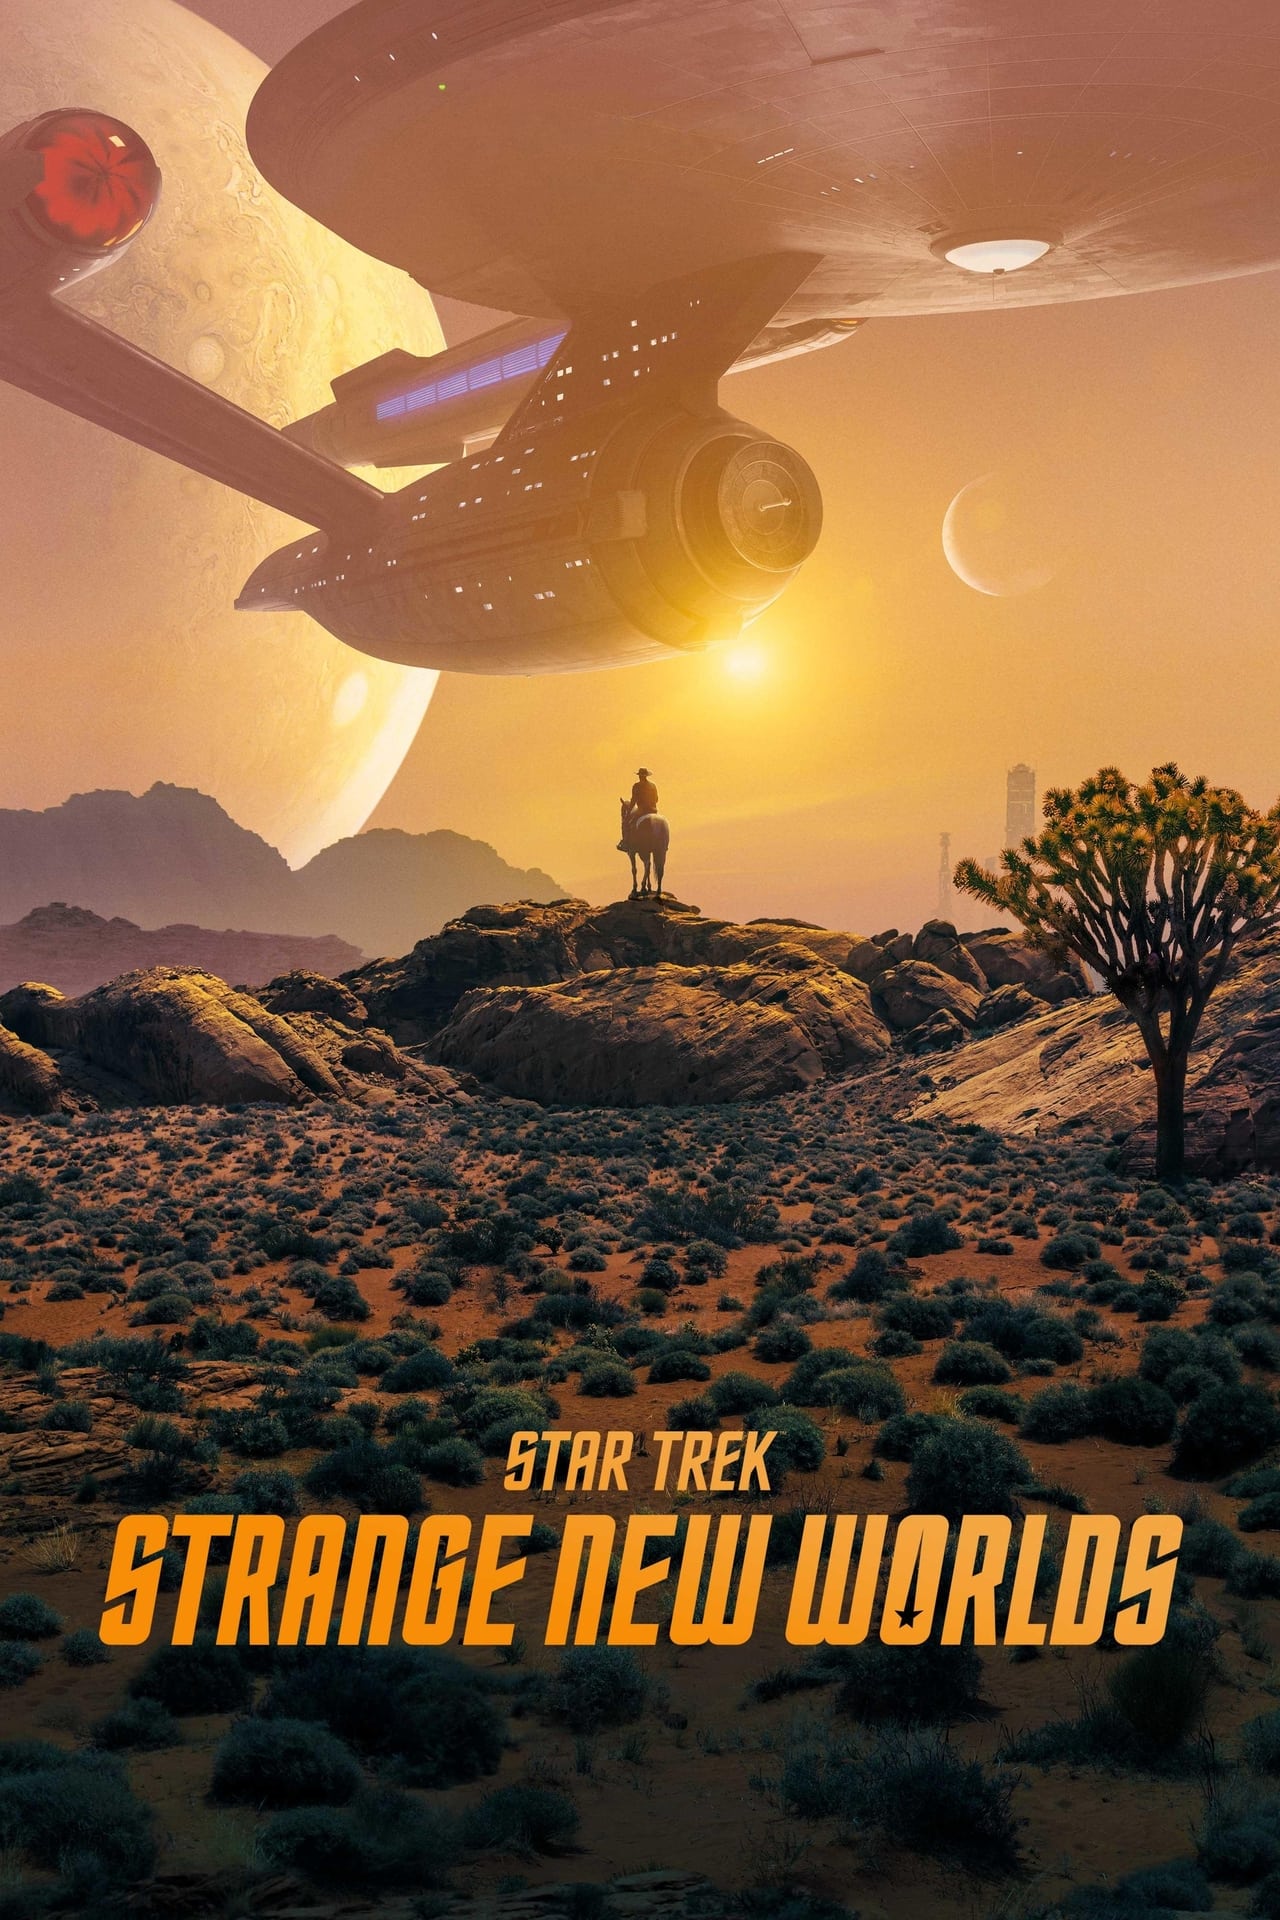 Star Trek: Strange New Worlds (season 1)